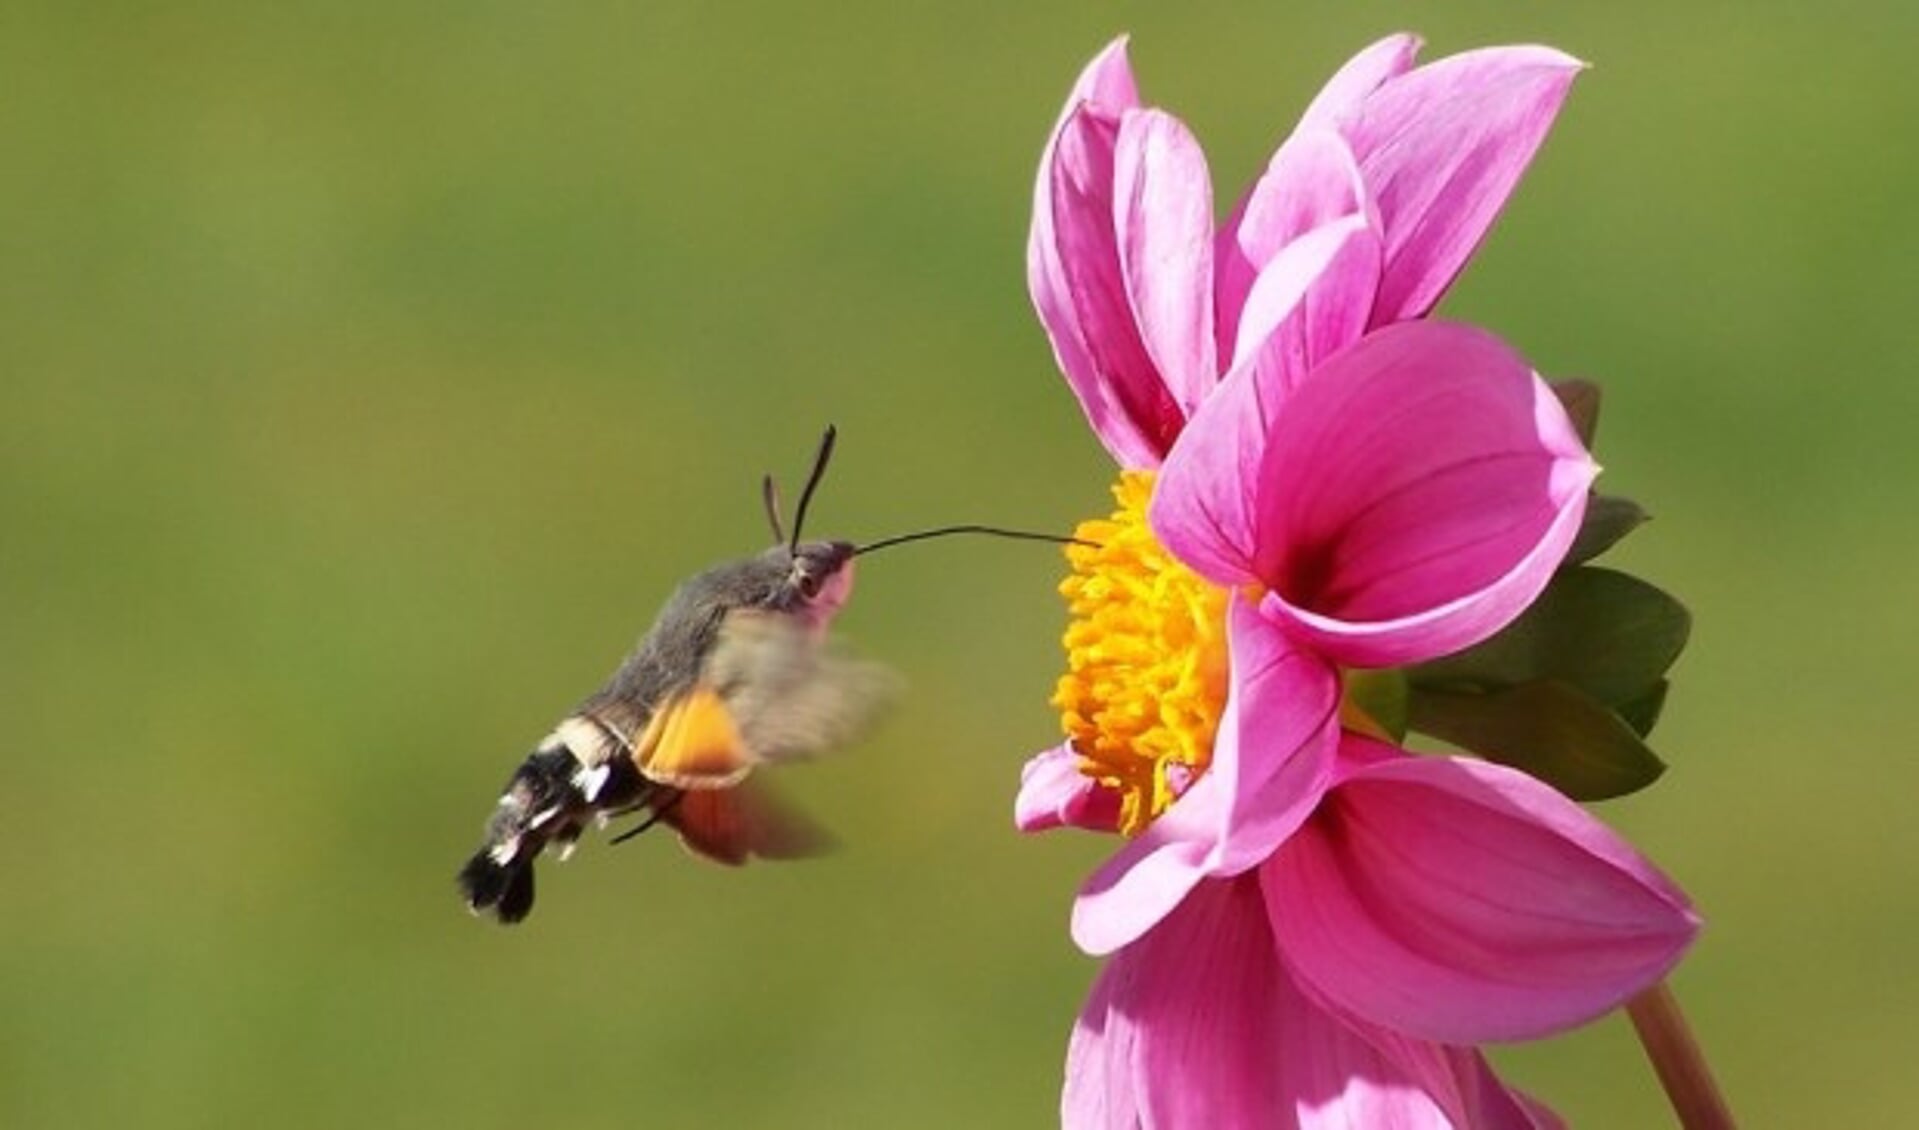 De kolibrievlinder komt voor in Zuid-Europa maar wordt ook wel in Nederland gezien.